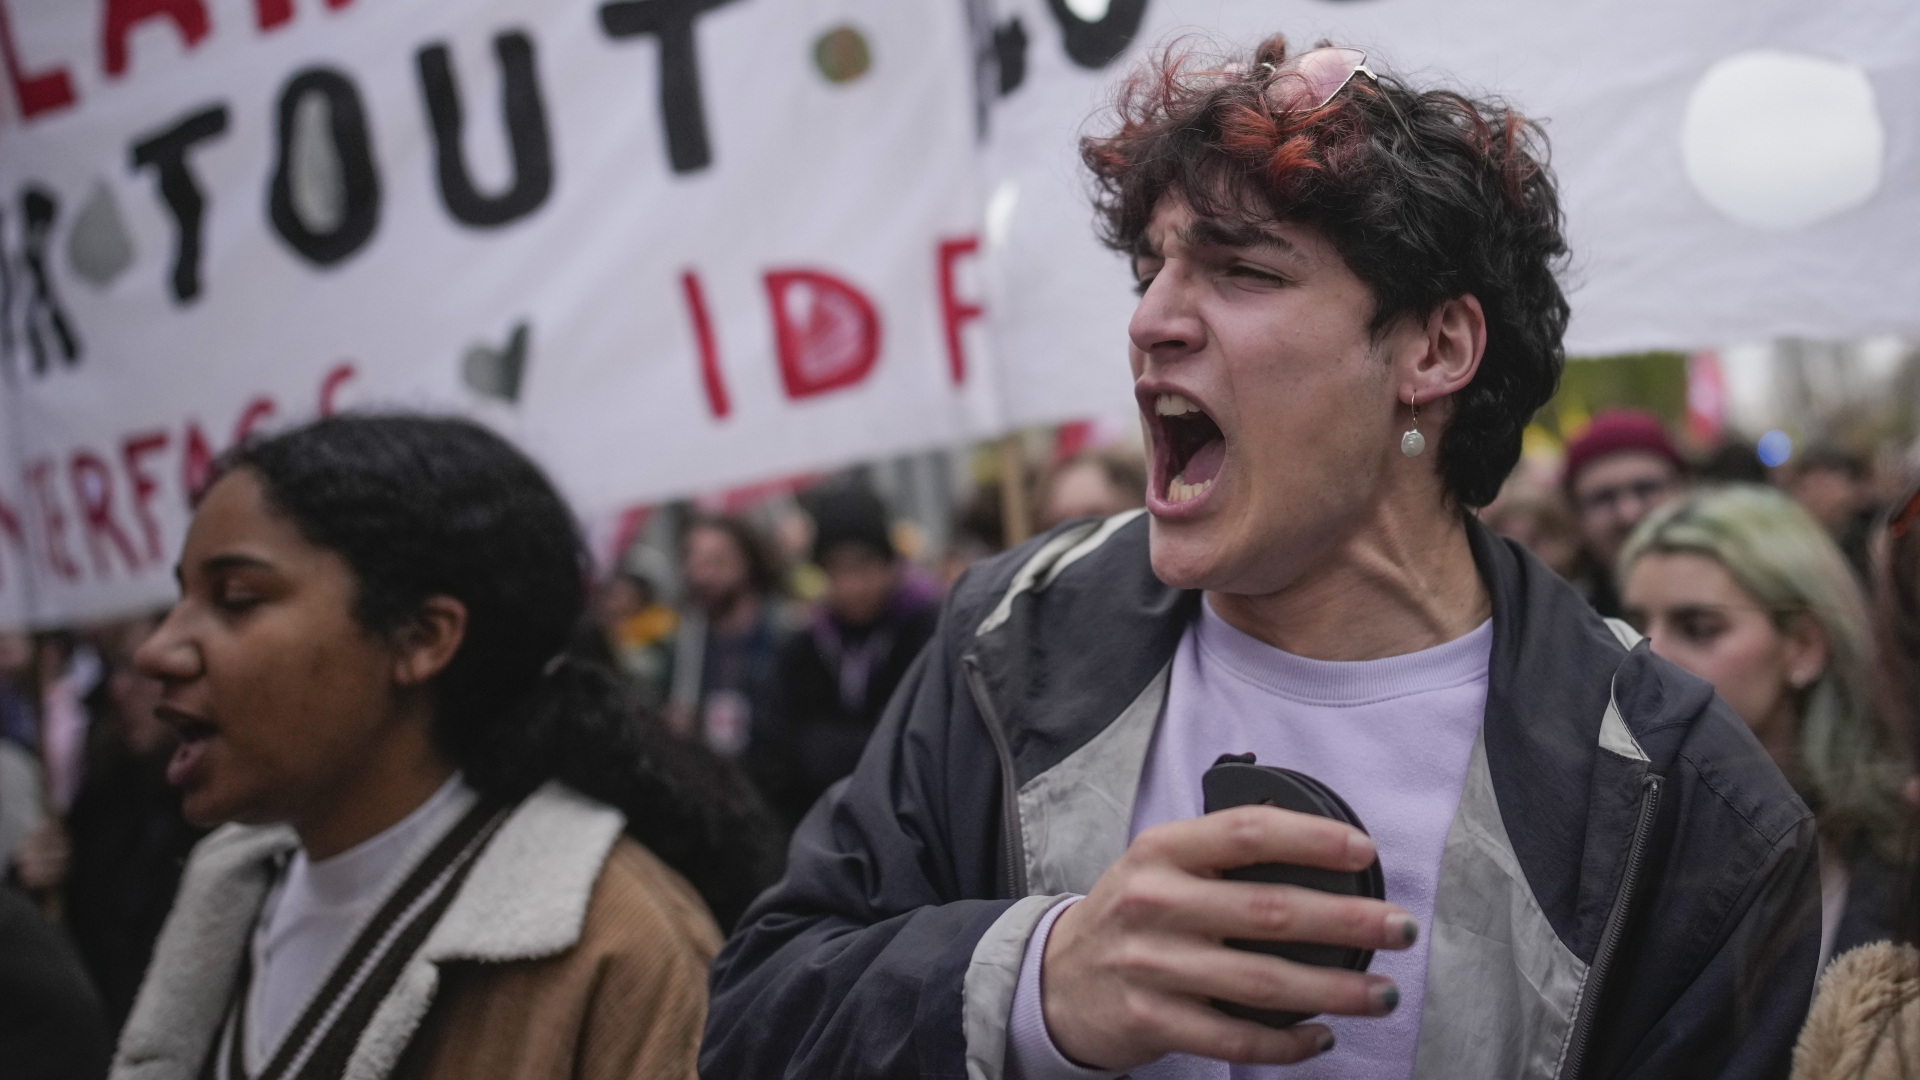 Eine junge Frau und ein junger Mann rufen Parolen auf einer Demonstration in Paris.